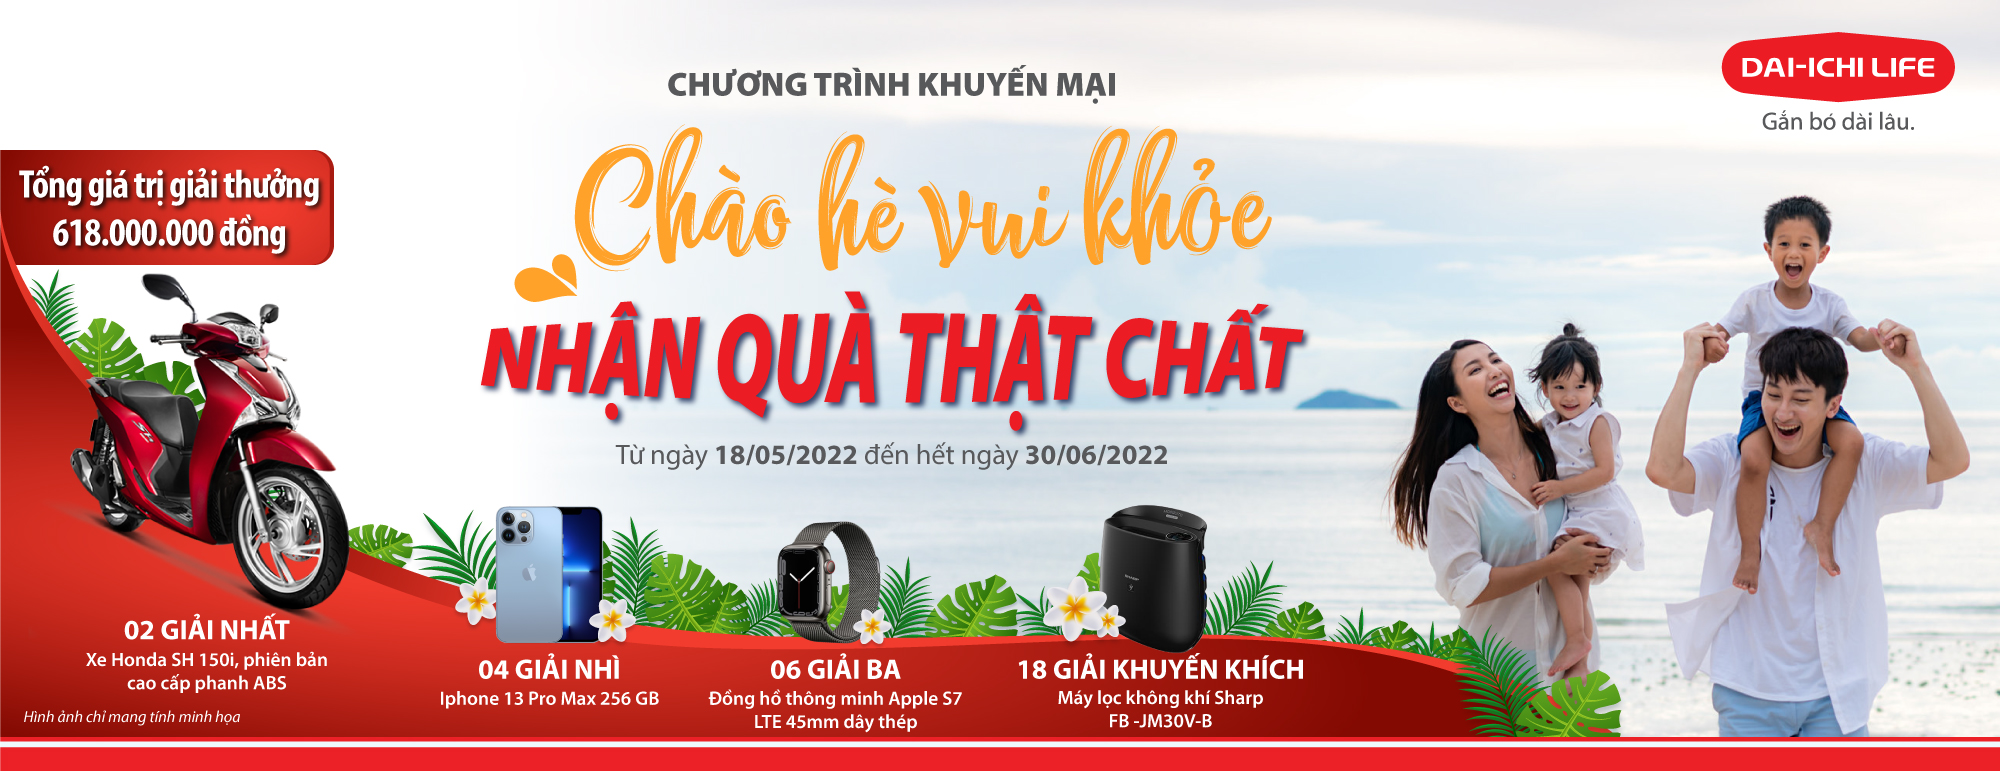 Dai-ichi Life Việt Nam triển khai chương trình khuyến mại “Chào hè vui khỏe – Nhận quà thật chất”...